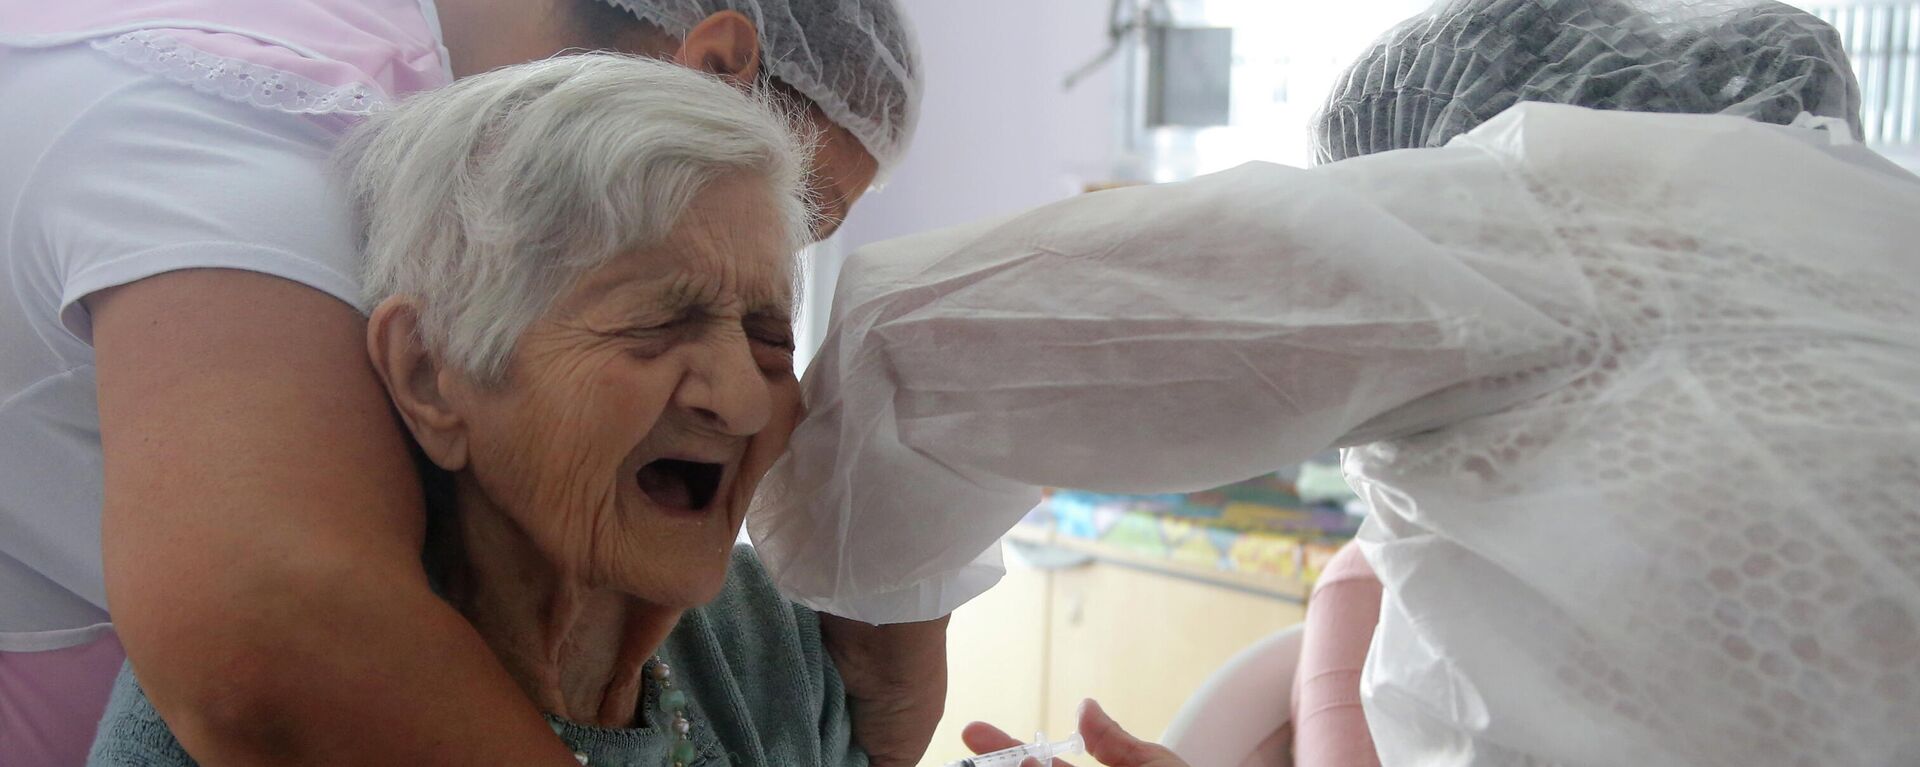 Enfermeras aplican una dosis de la vacuna de Sinovac a una anciana en el estado de Sao Paulo - Sputnik Mundo, 1920, 04.03.2021